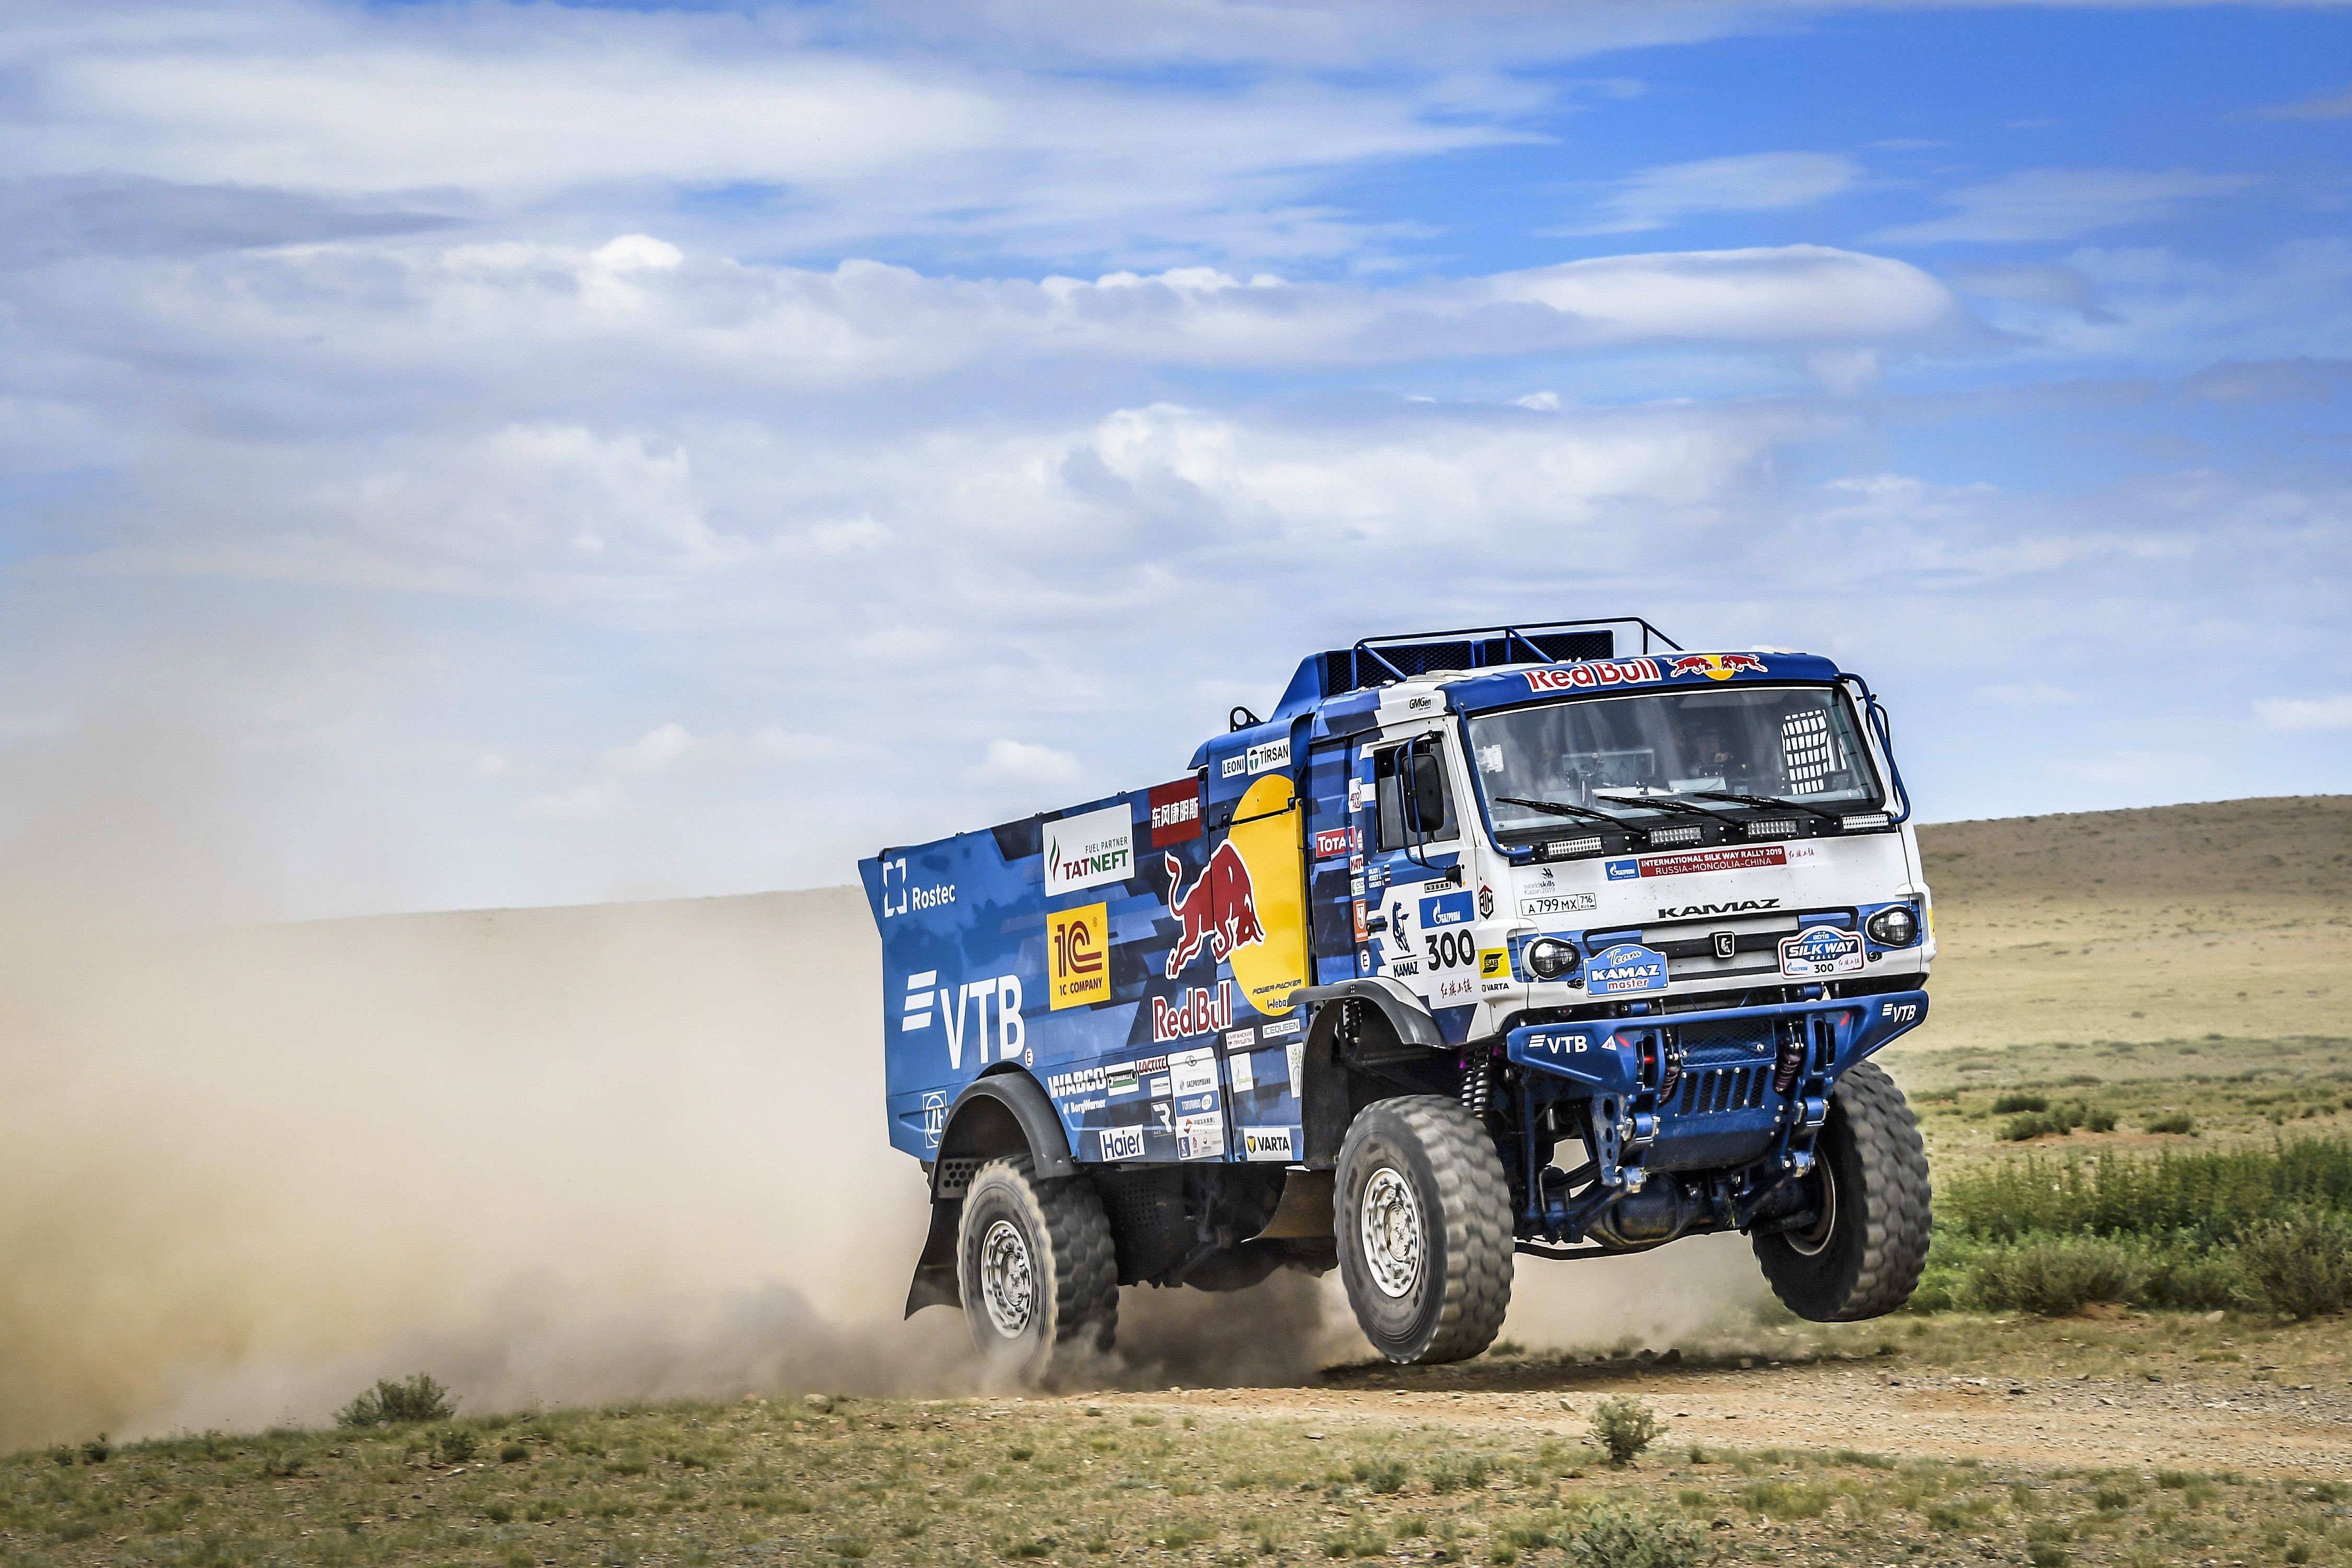 Kamaz Rallying Red Bull Truck Vehicle 4500x3000